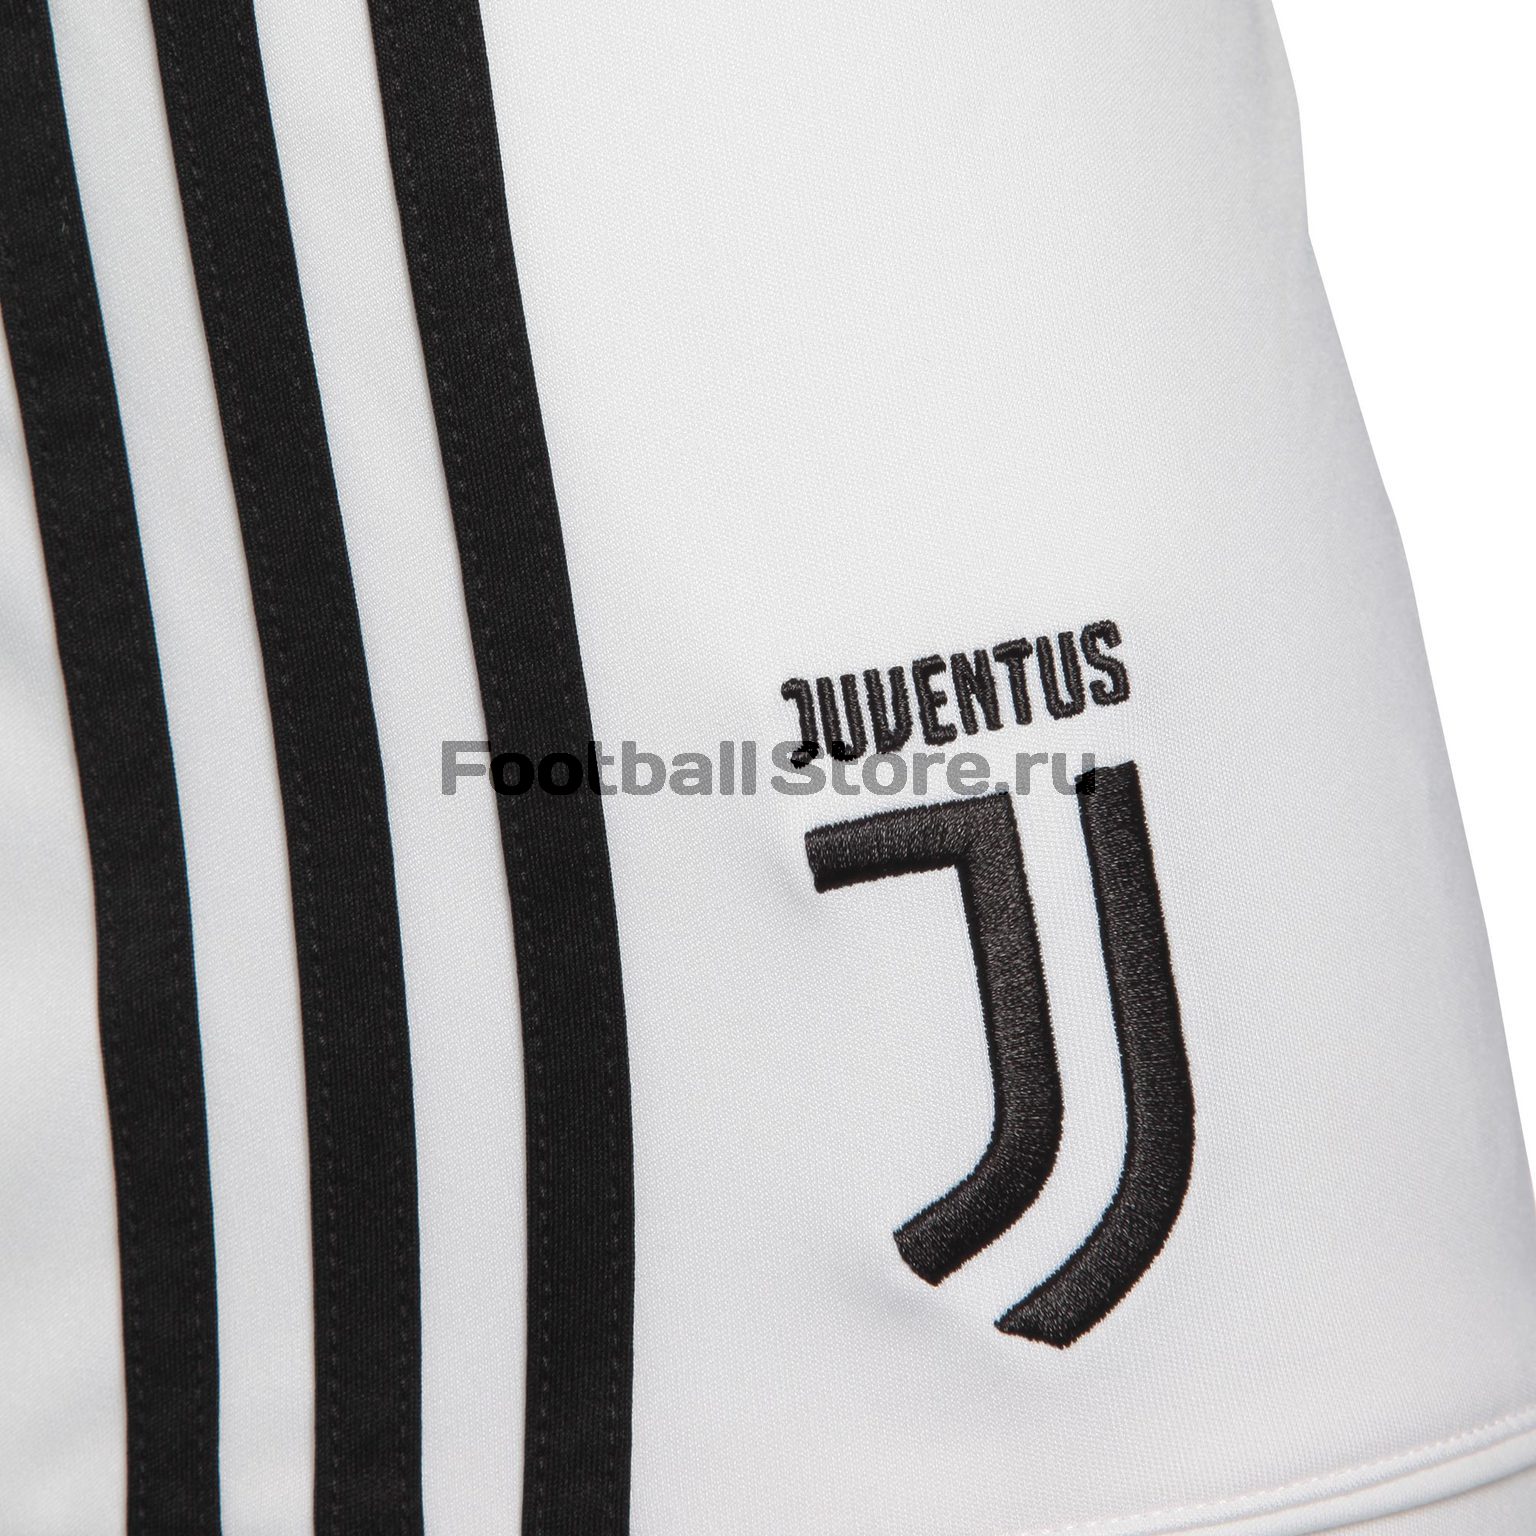 Шорты домашние игровые Adidas Juventus 2017/18